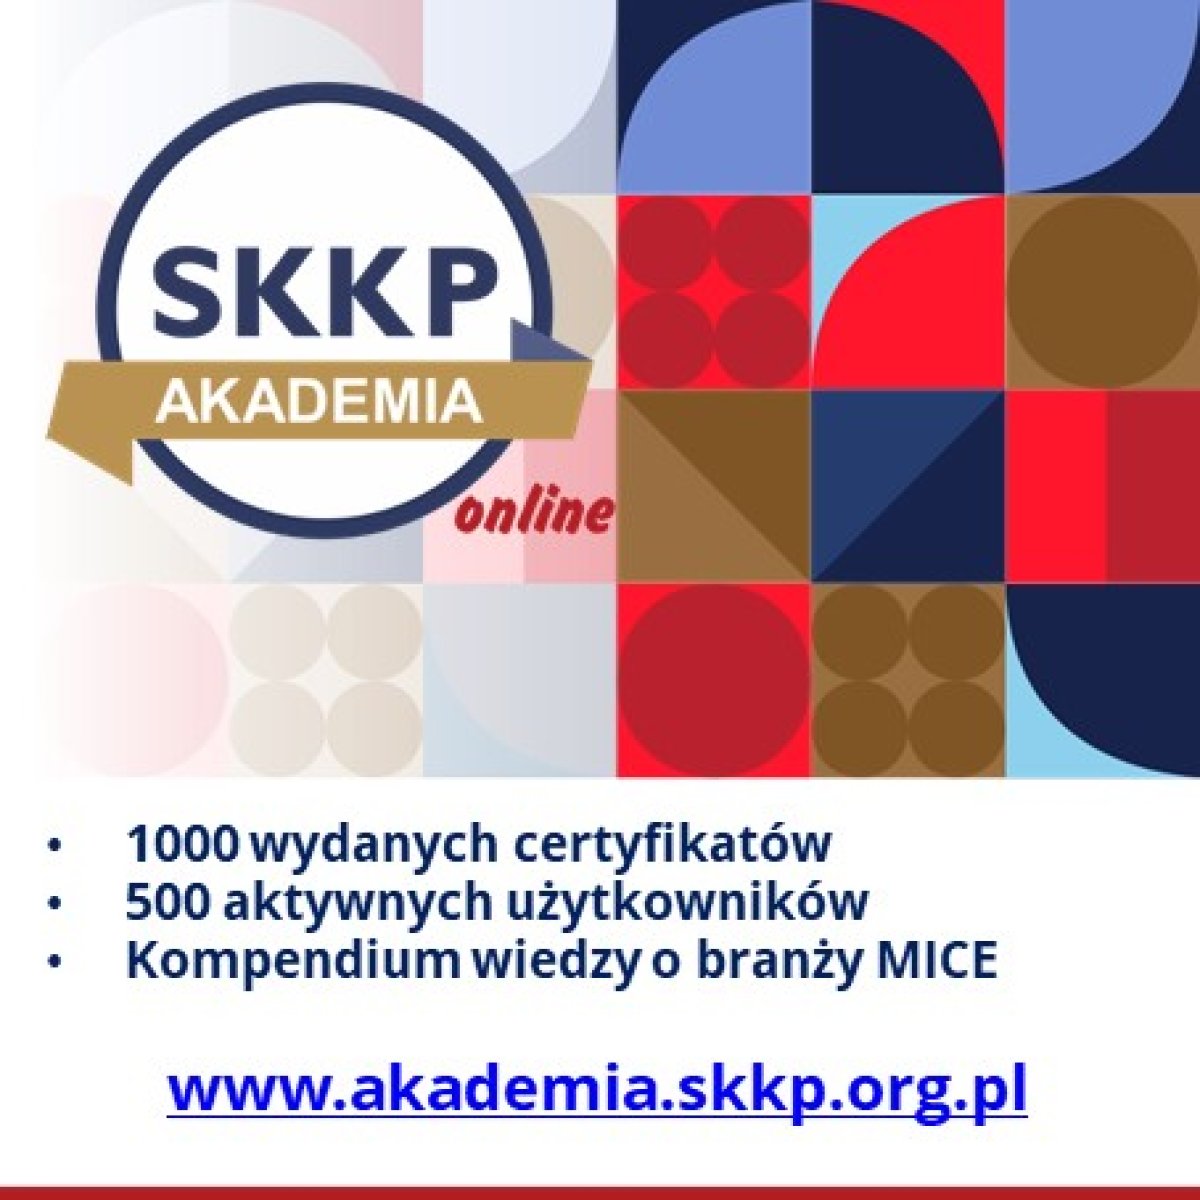 Projekt "Zarządzanie w branży MICE" SKKP zakończony dobrymi wynikami